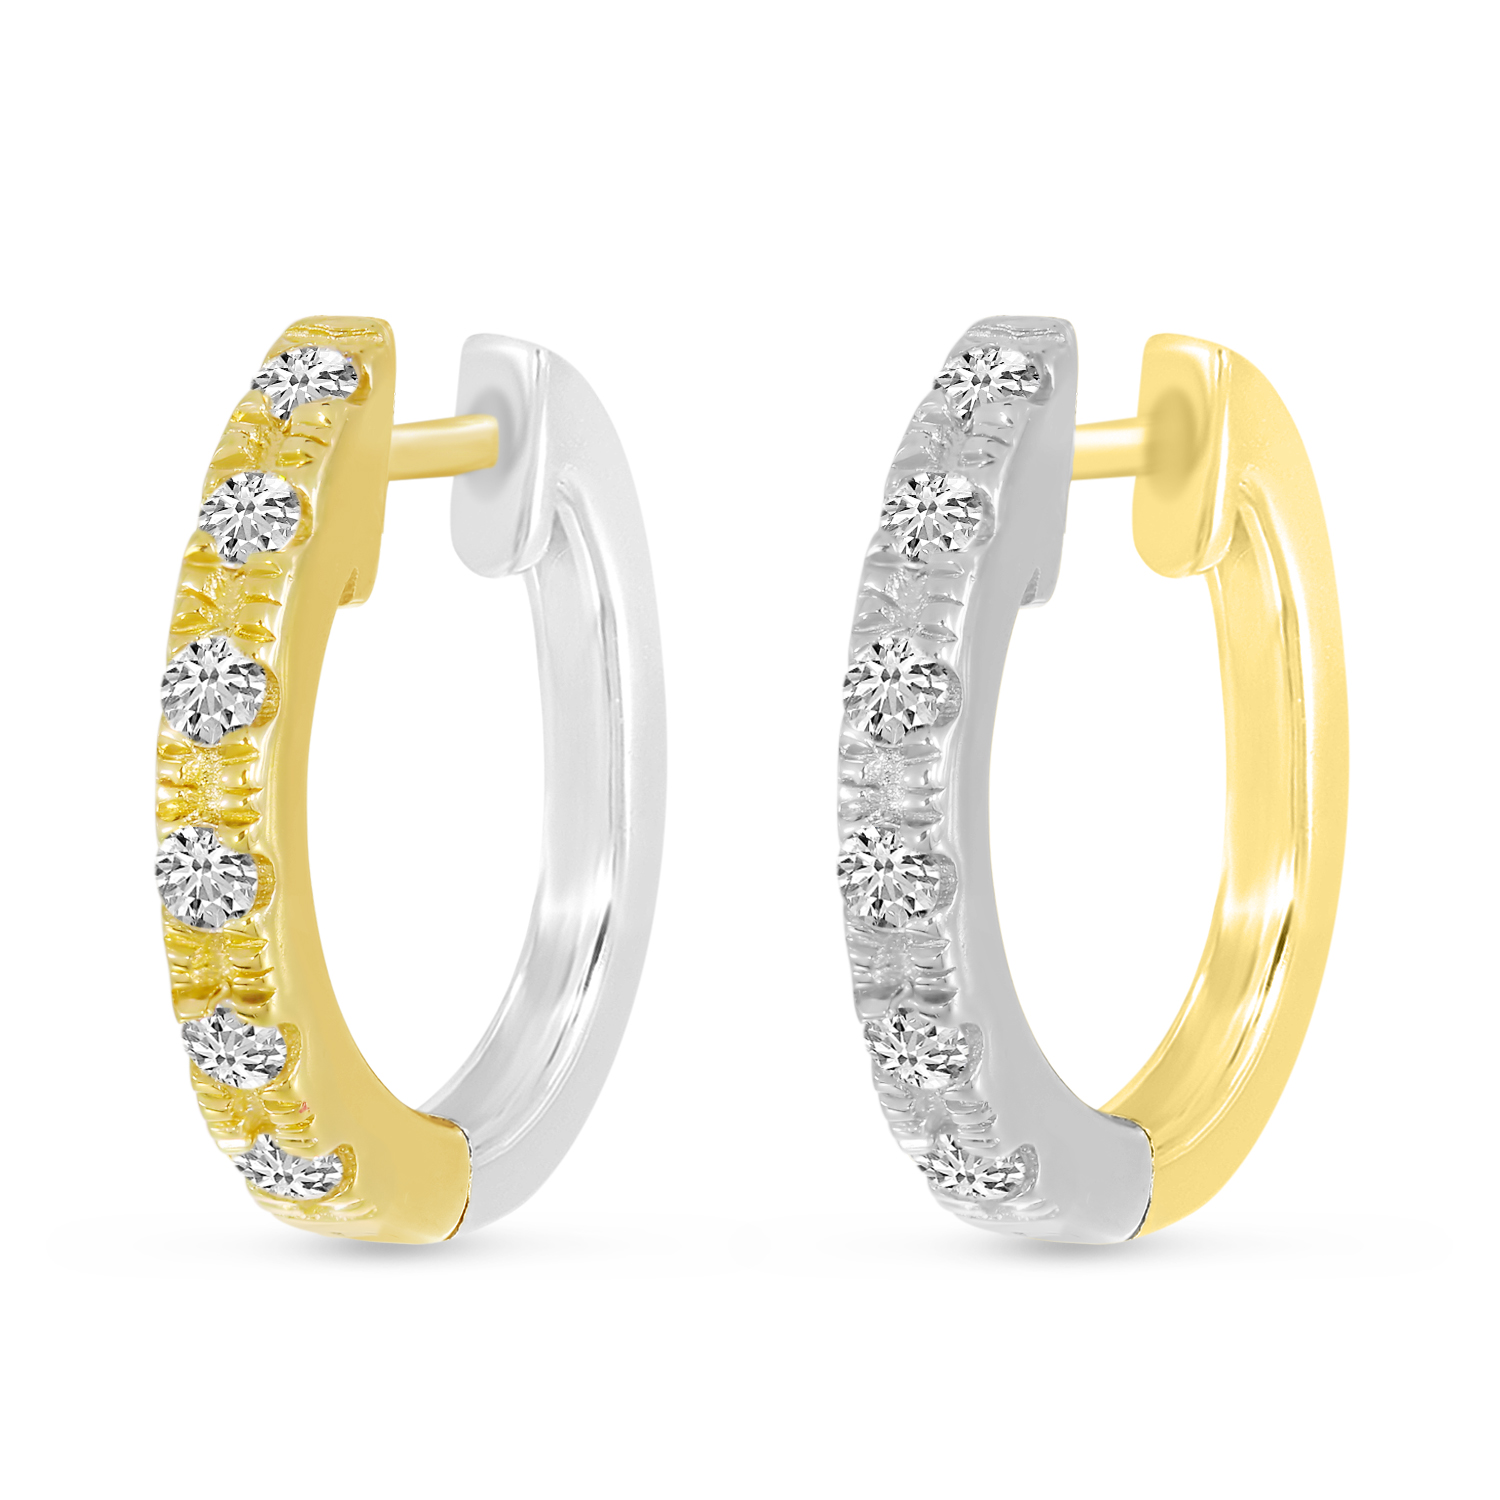 14K Yellow Gold & White Gold Diamond Reversible Huggie Earrings